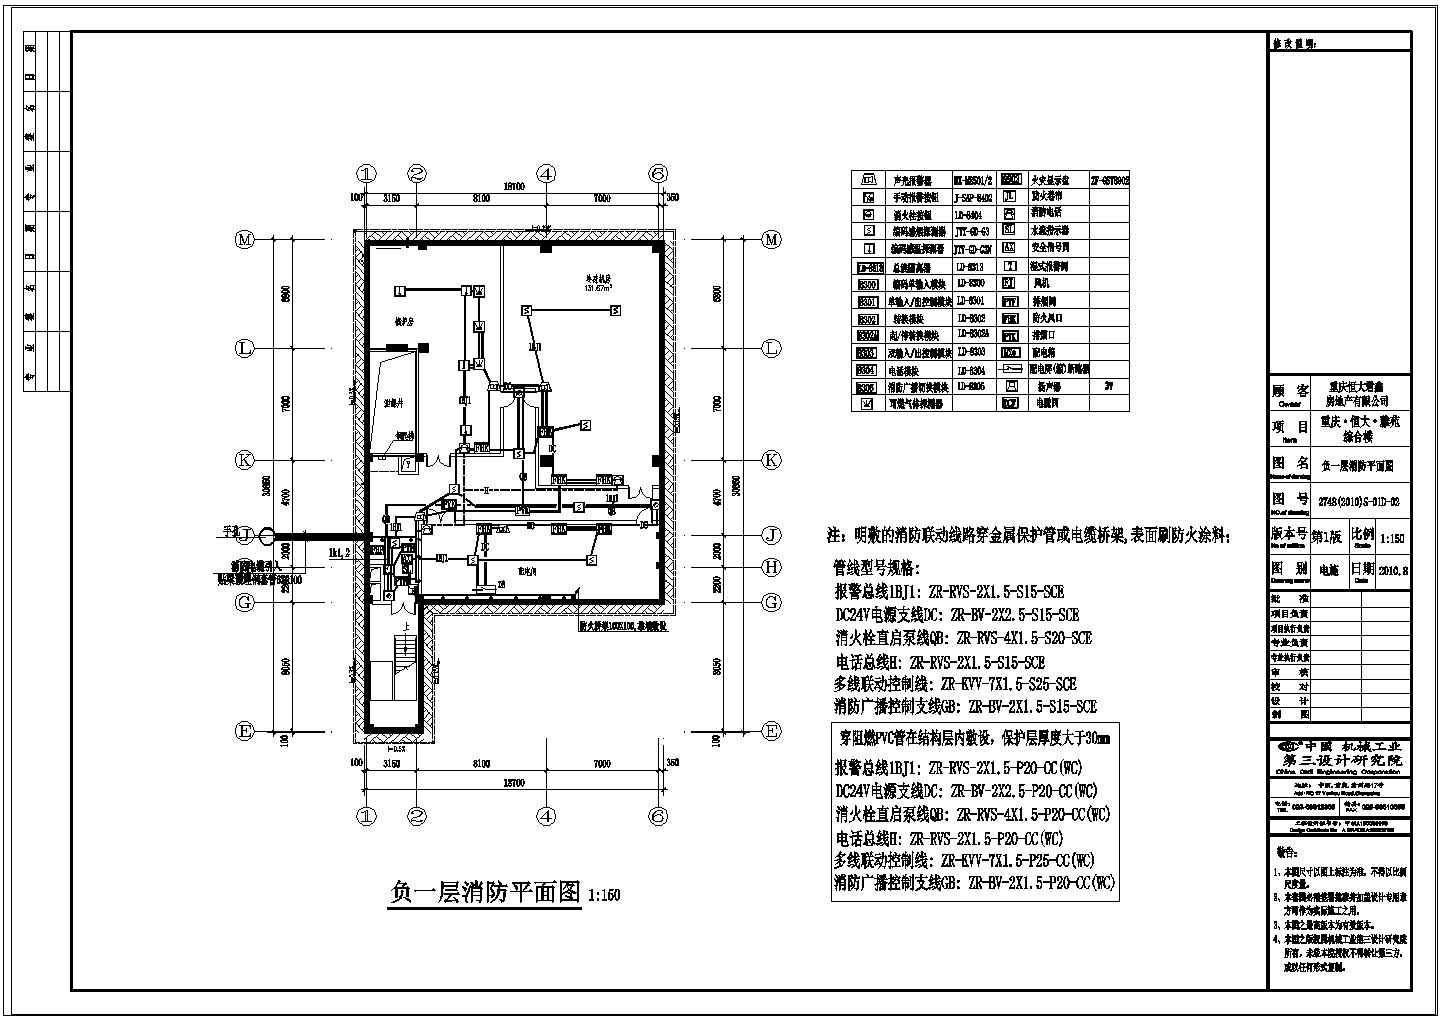 【重庆】恒大雅苑综合楼电气设计图纸